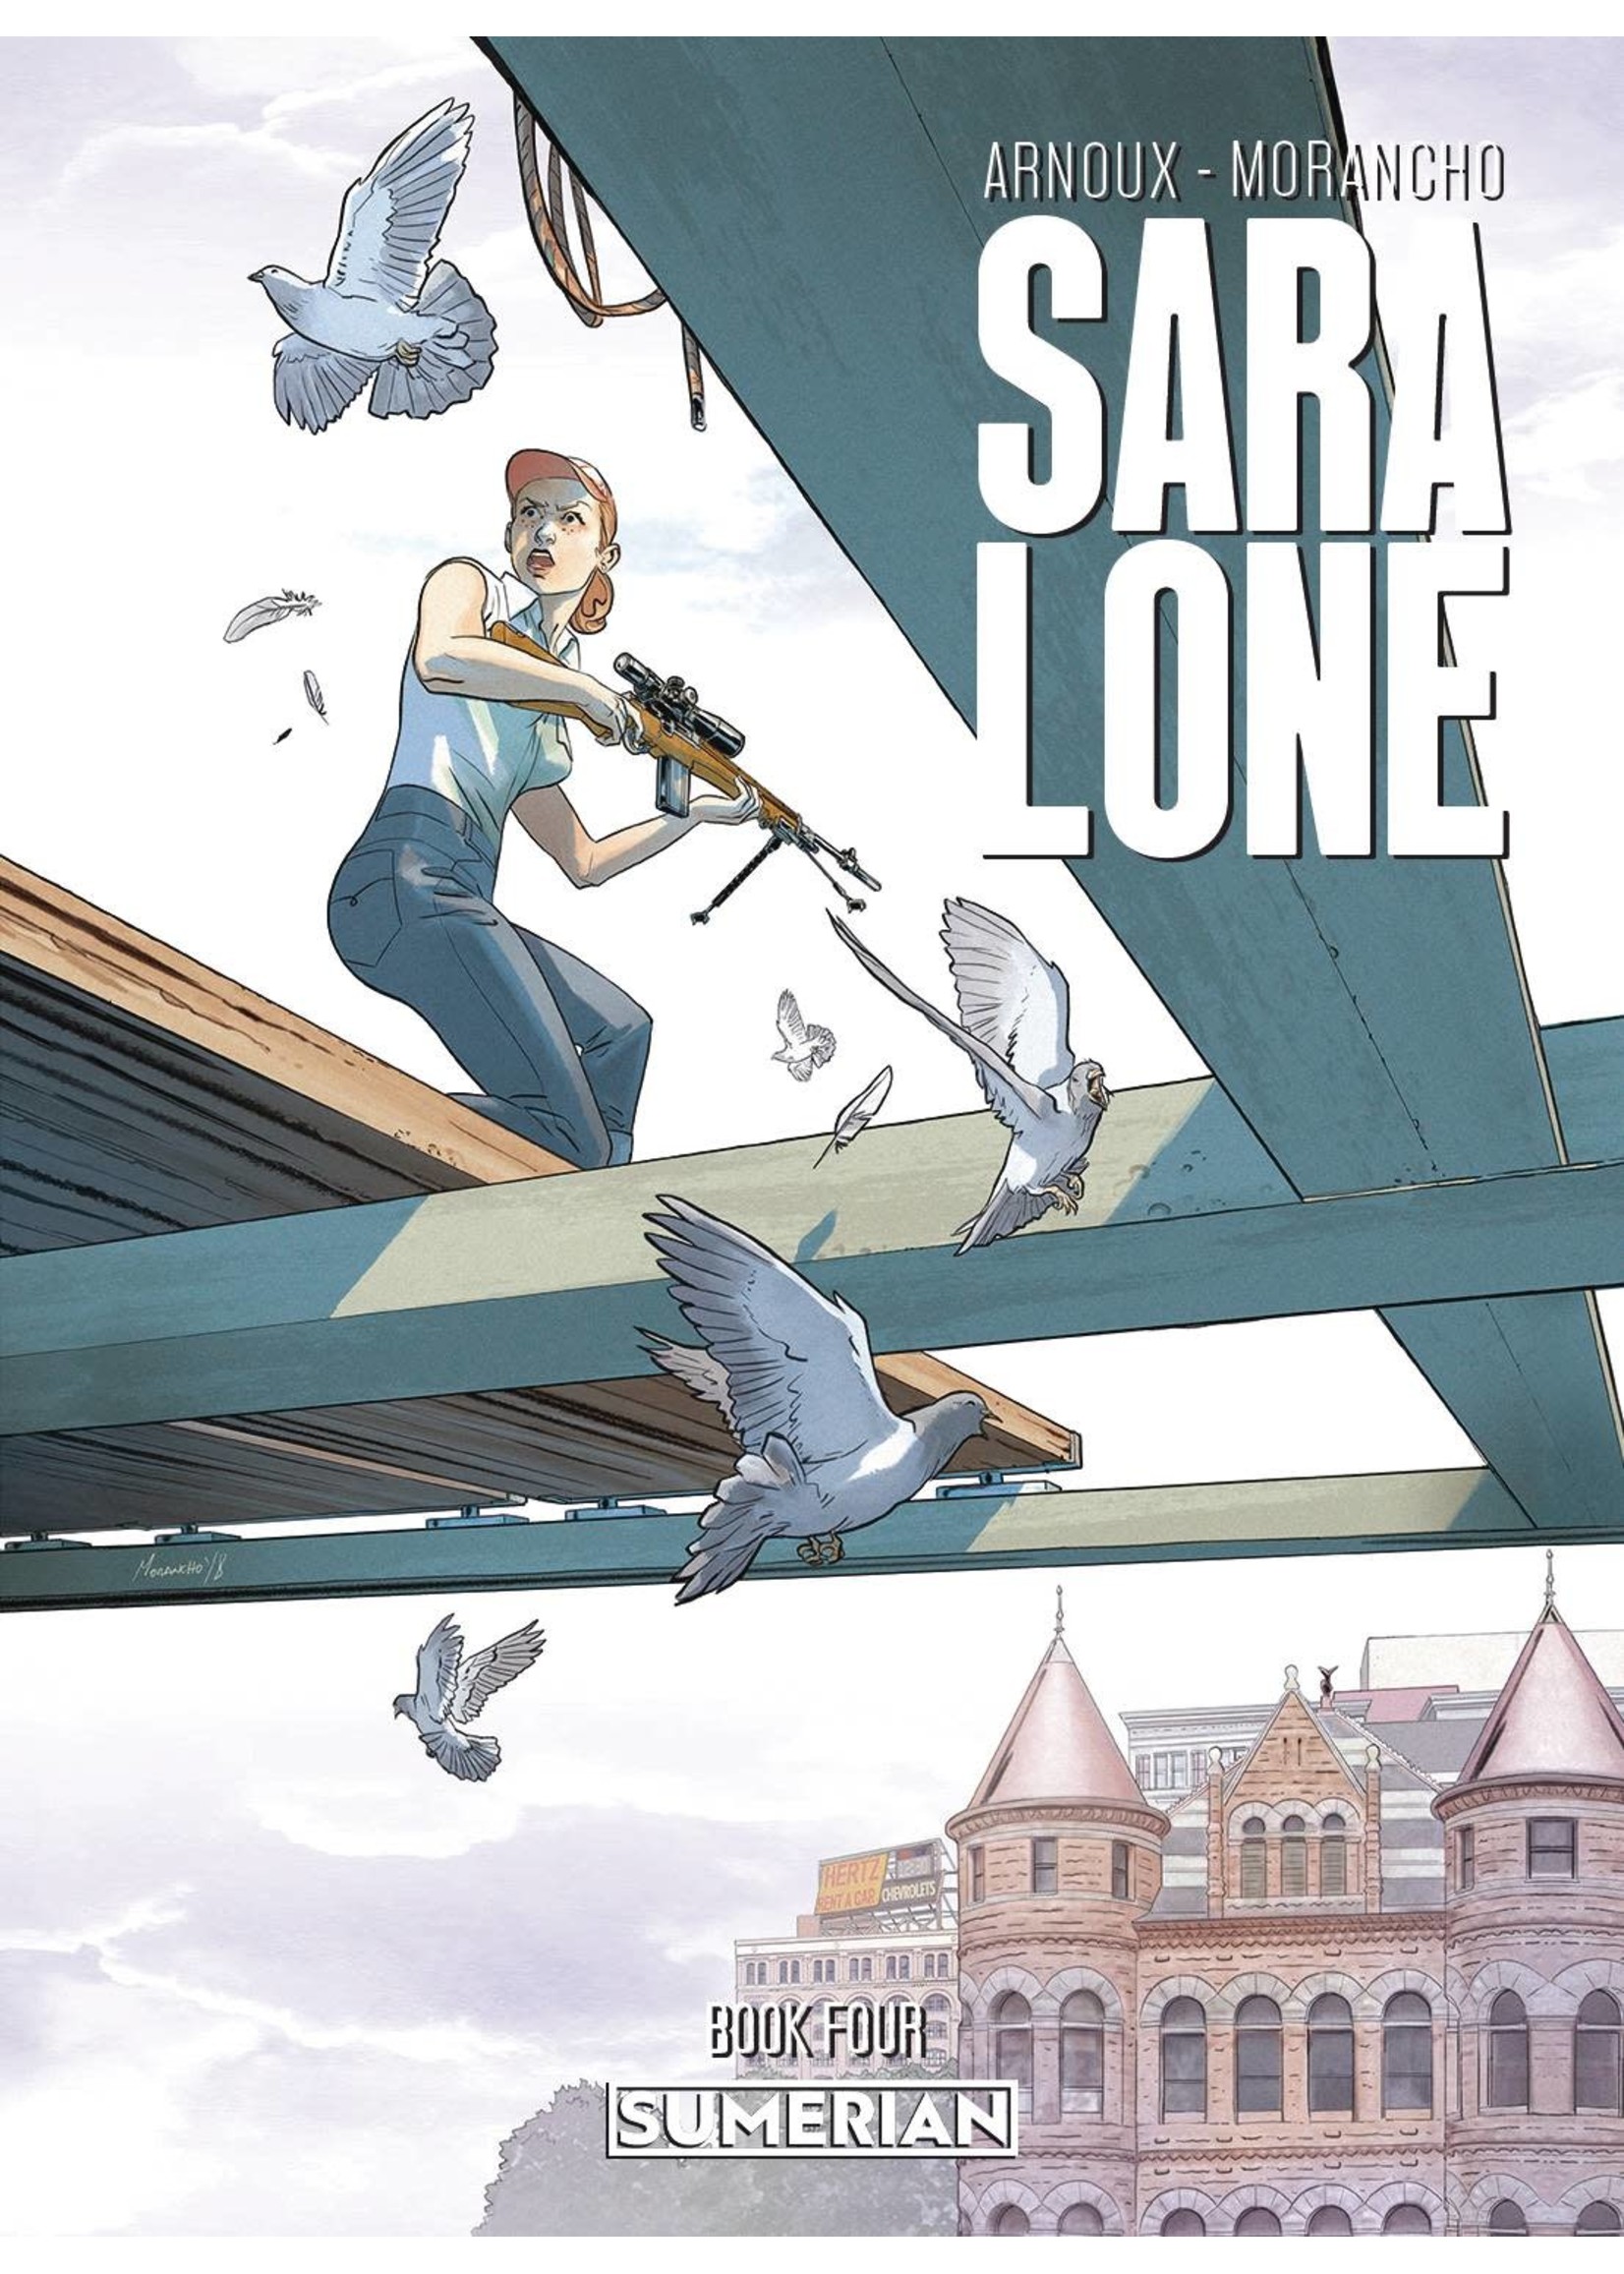 SUMERIAN COMICS SARA LONE complete 4 issue series